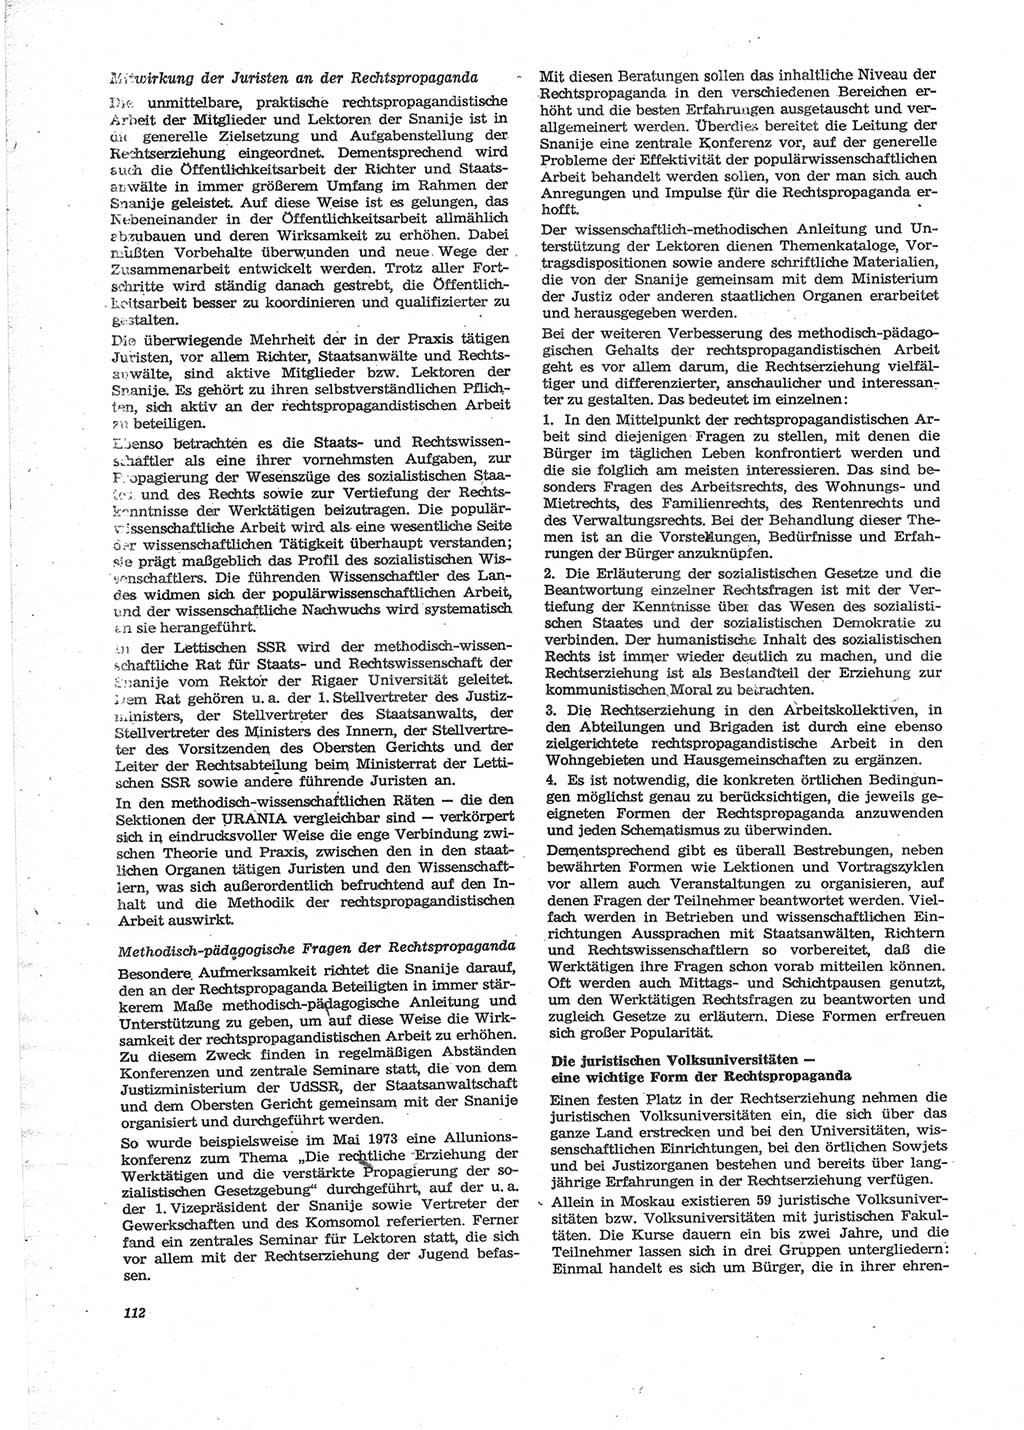 Neue Justiz (NJ), Zeitschrift für Recht und Rechtswissenschaft [Deutsche Demokratische Republik (DDR)], 28. Jahrgang 1974, Seite 112 (NJ DDR 1974, S. 112)